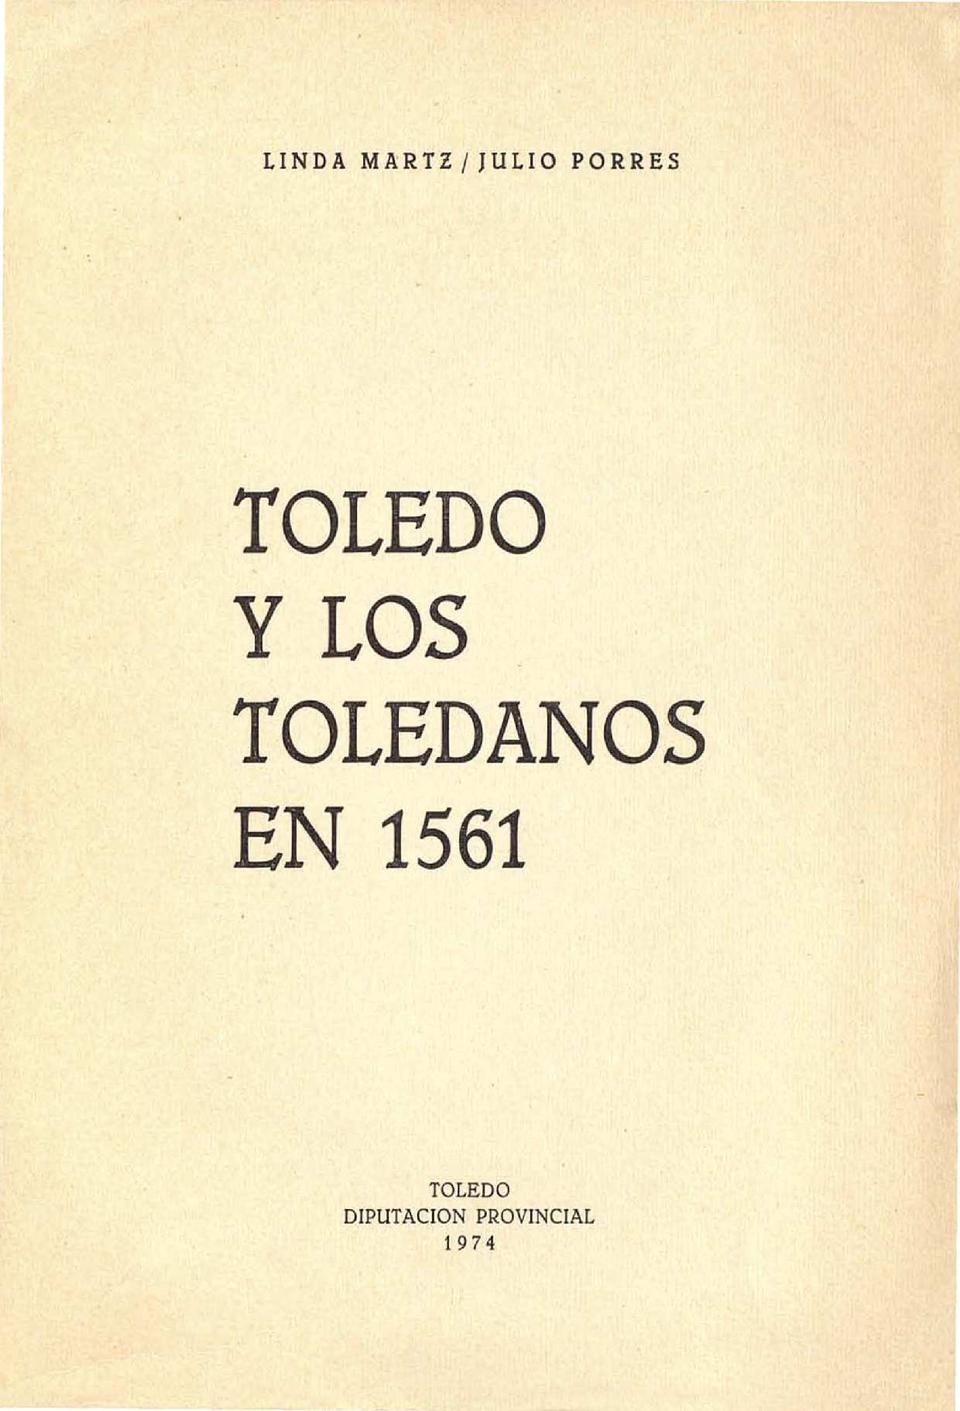 Toledo y los toledanos en 1561 / Linda Martz y Julio Porres Martín-Cleto.-. [Monografía]